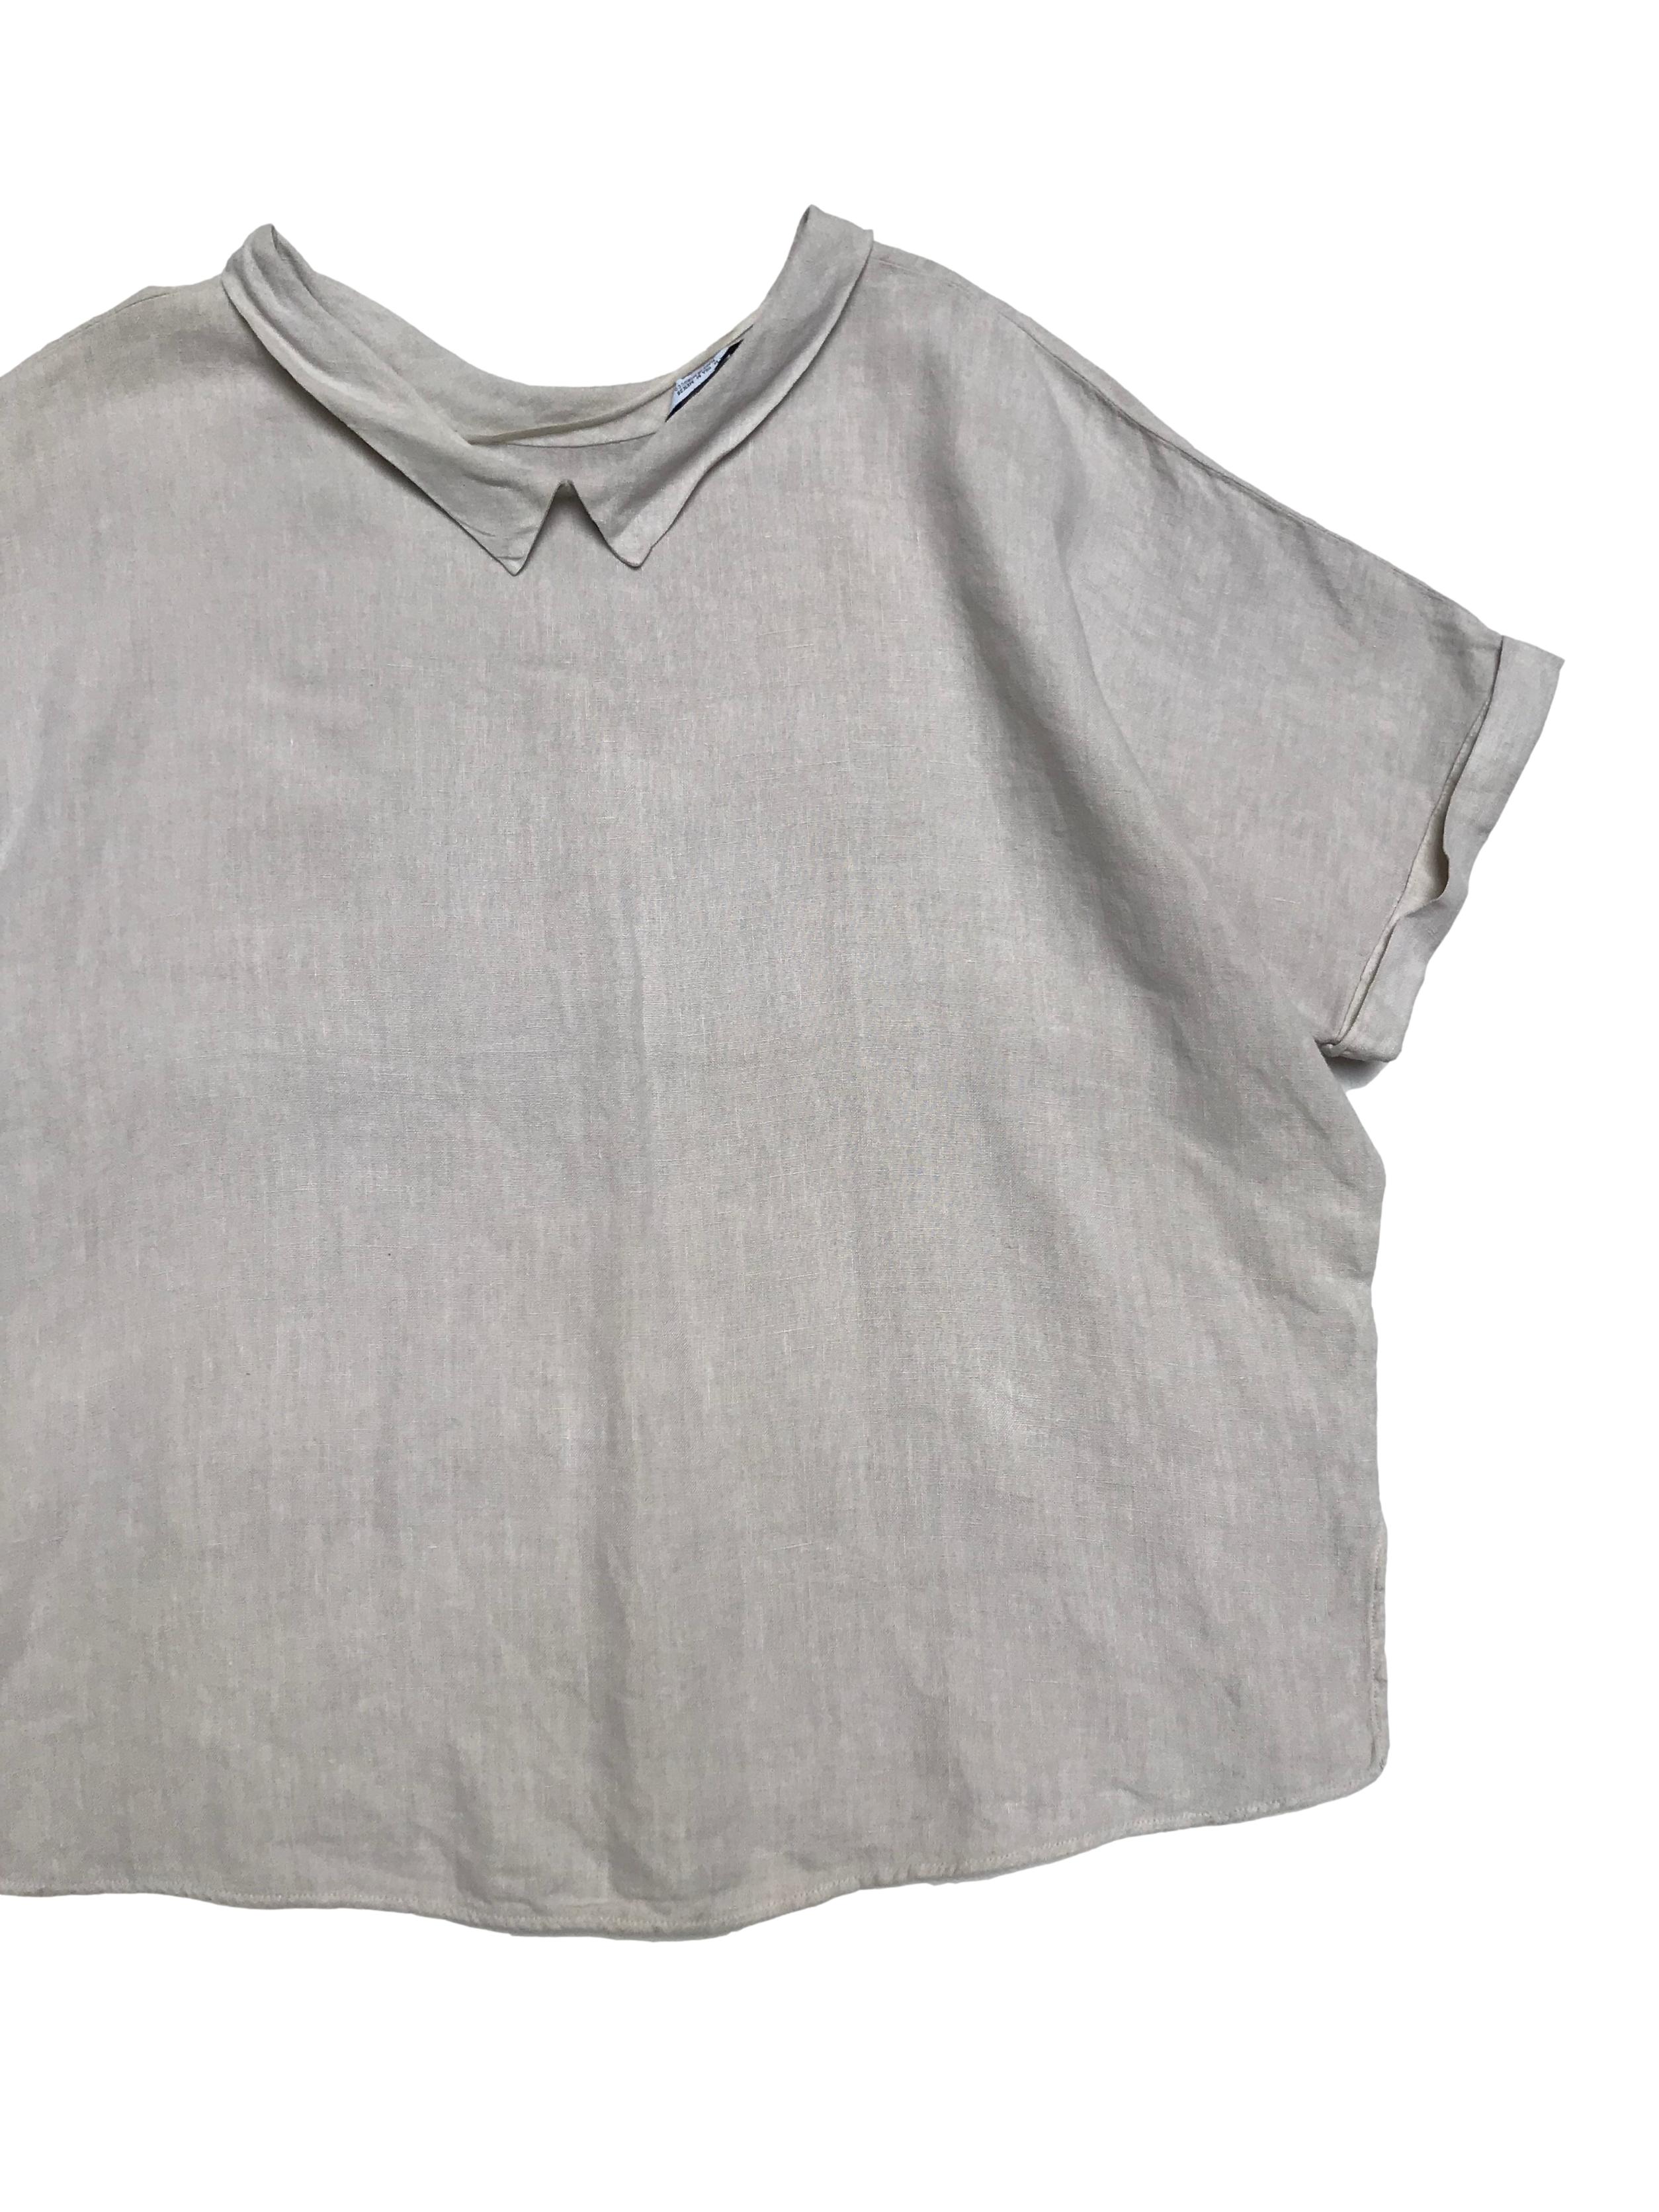 Blusa Zara oversize 100% lino crema con dobladillo en manga y cuello